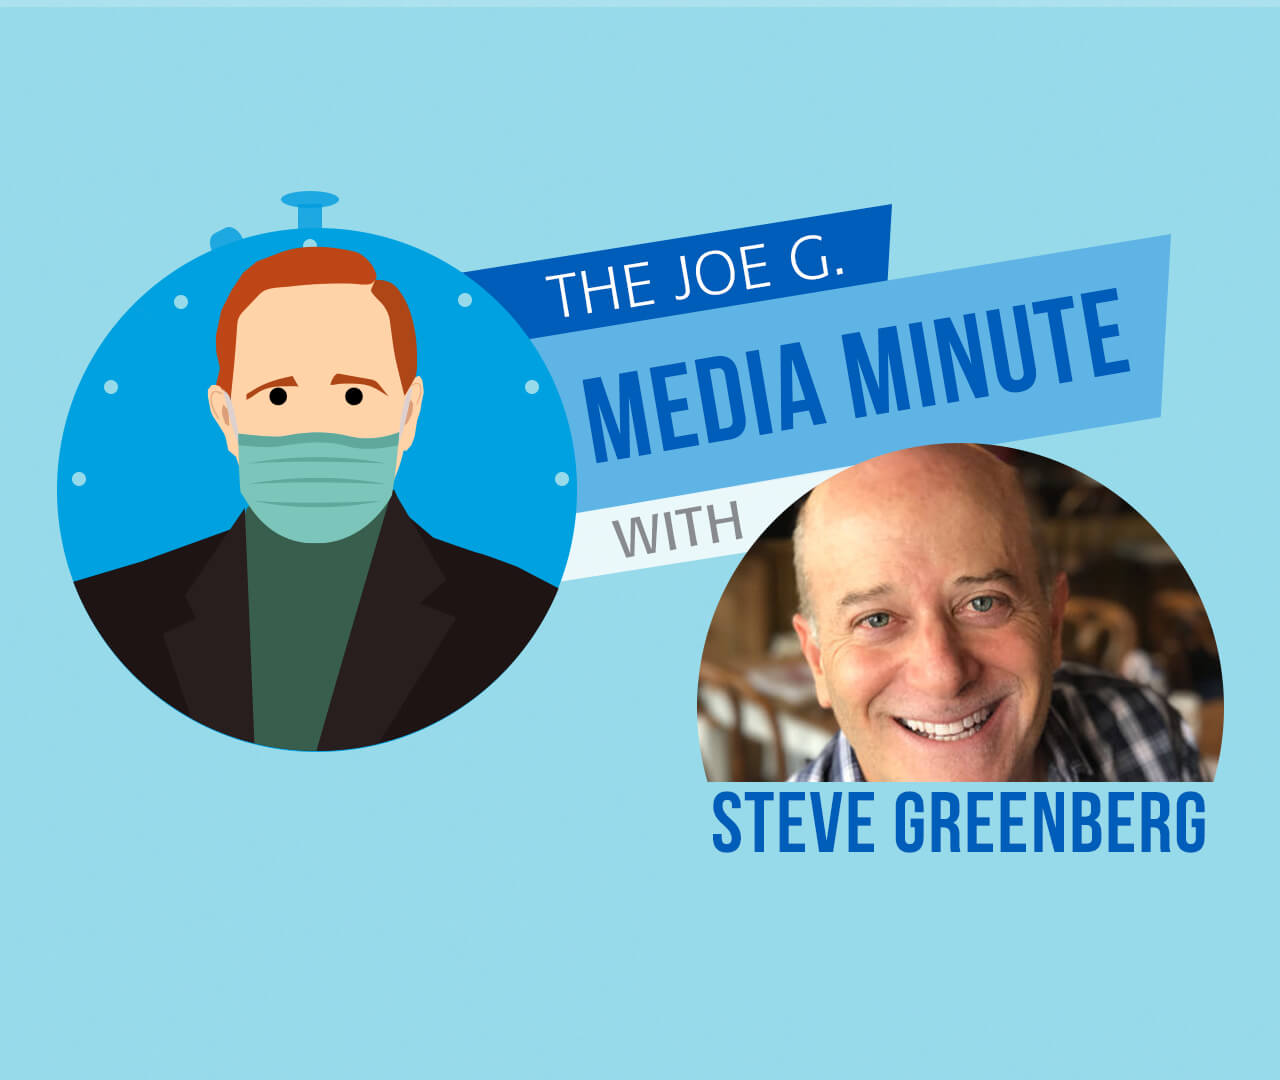 The Joe G. Media Minute with Steve Greenberg